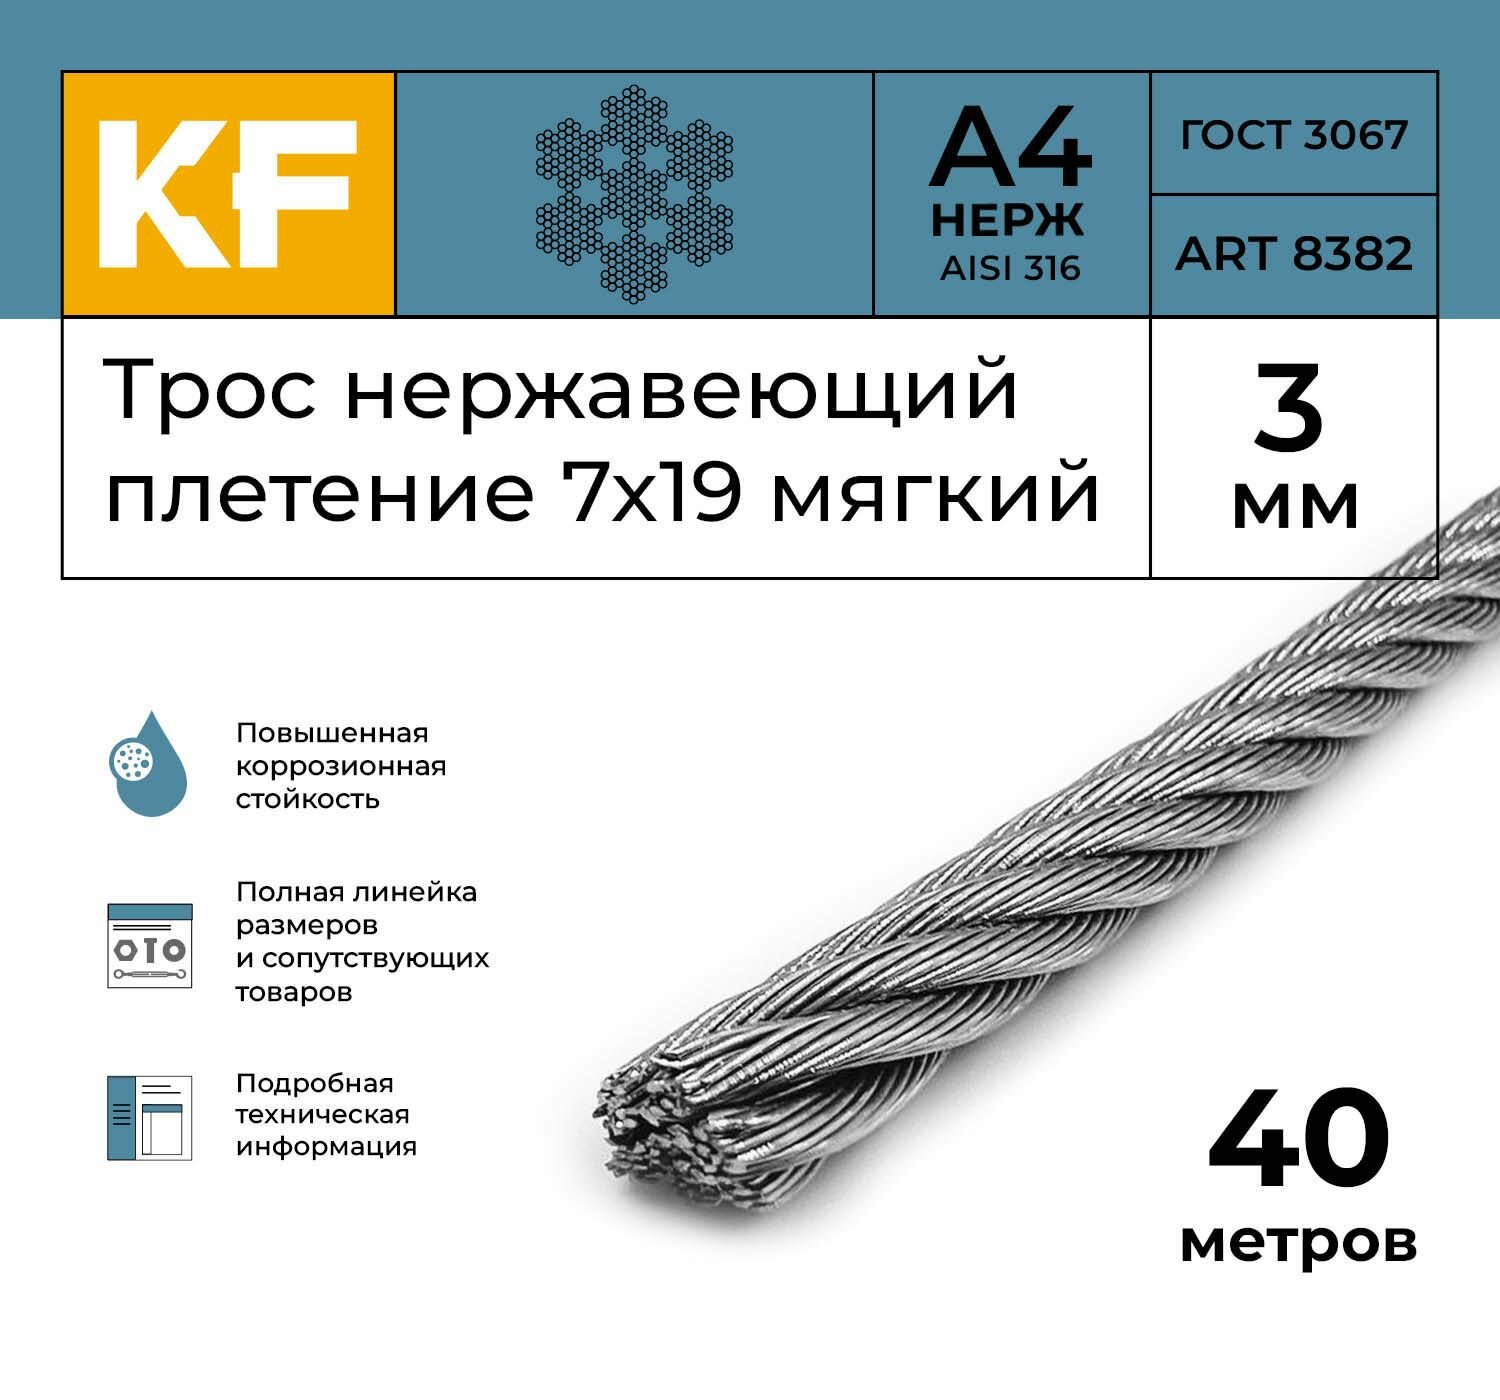 Трос нержавеющий 3 мм сталь А4 плетение 7х19 мягкий 40 метров